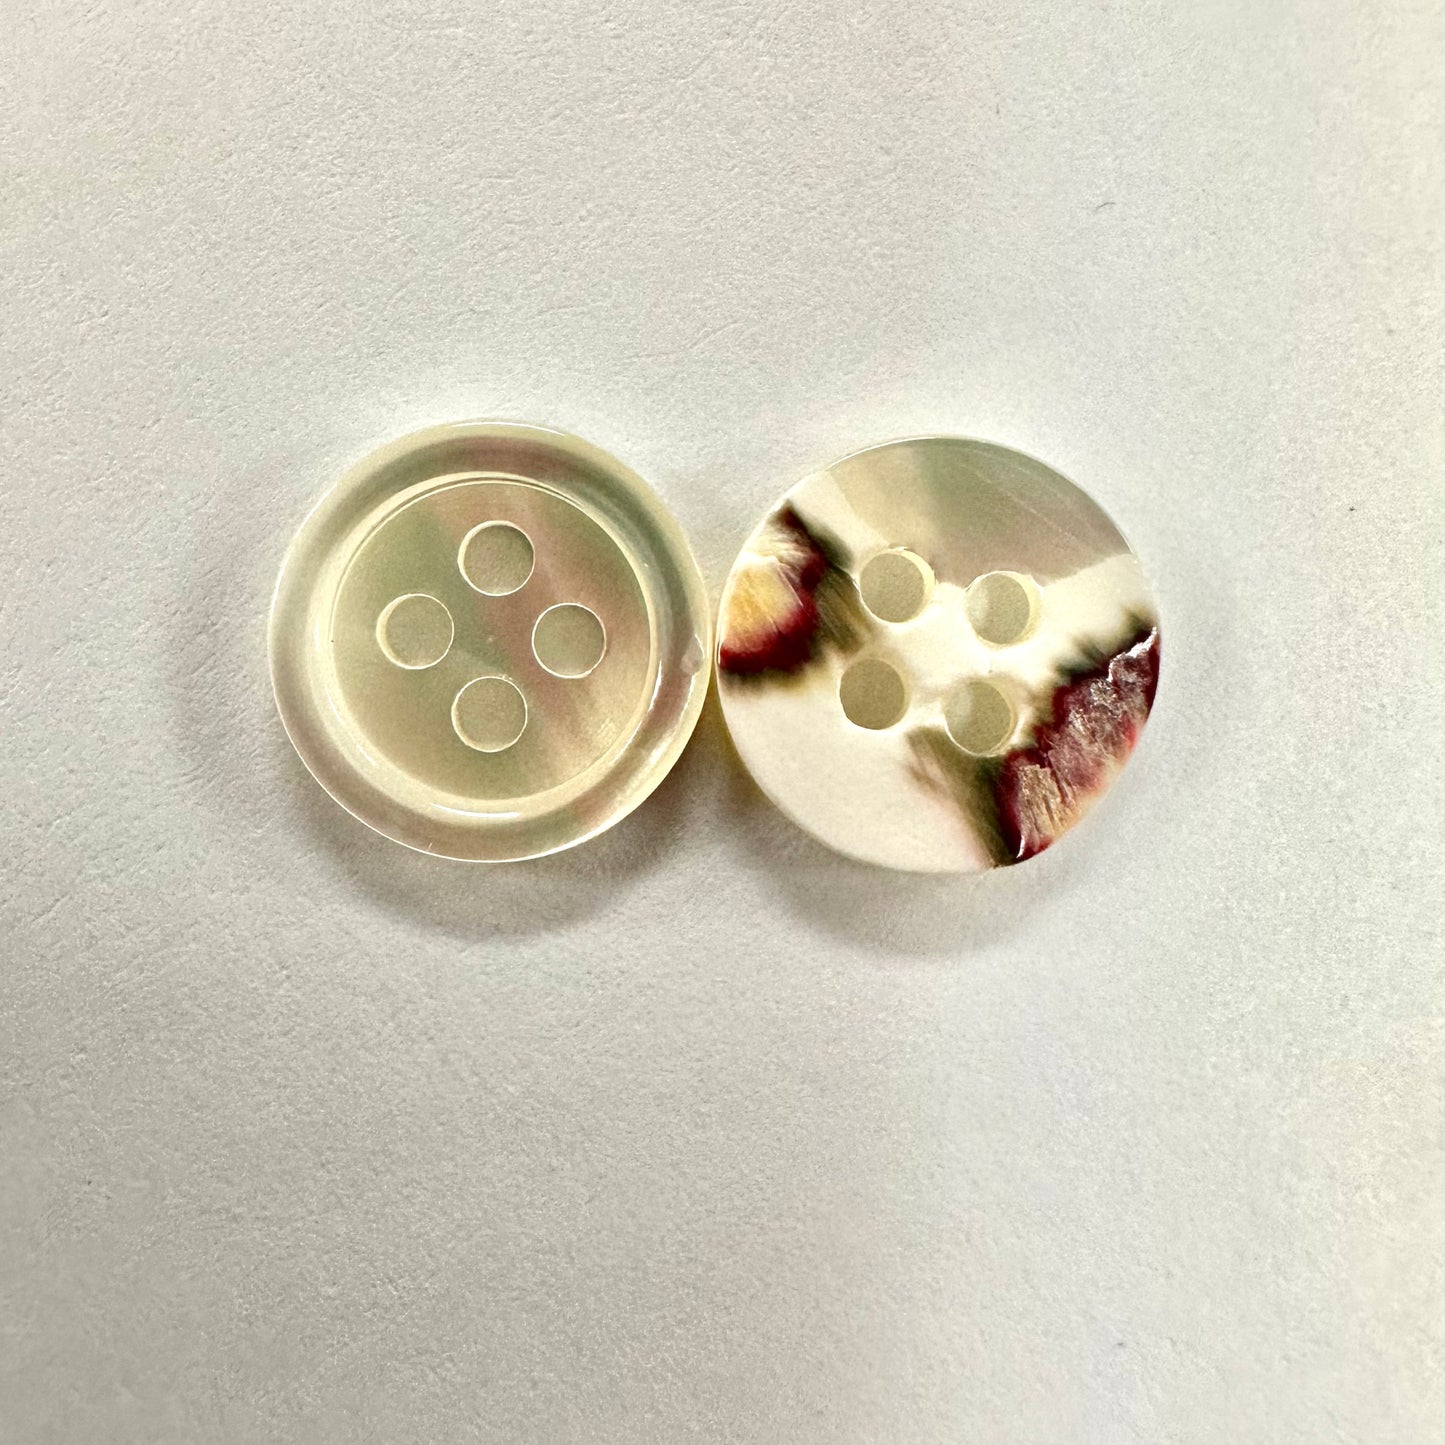 natural shell buttons 13mm 10pcs 天然白蝶貝鈕扣 13mm 10粒裝